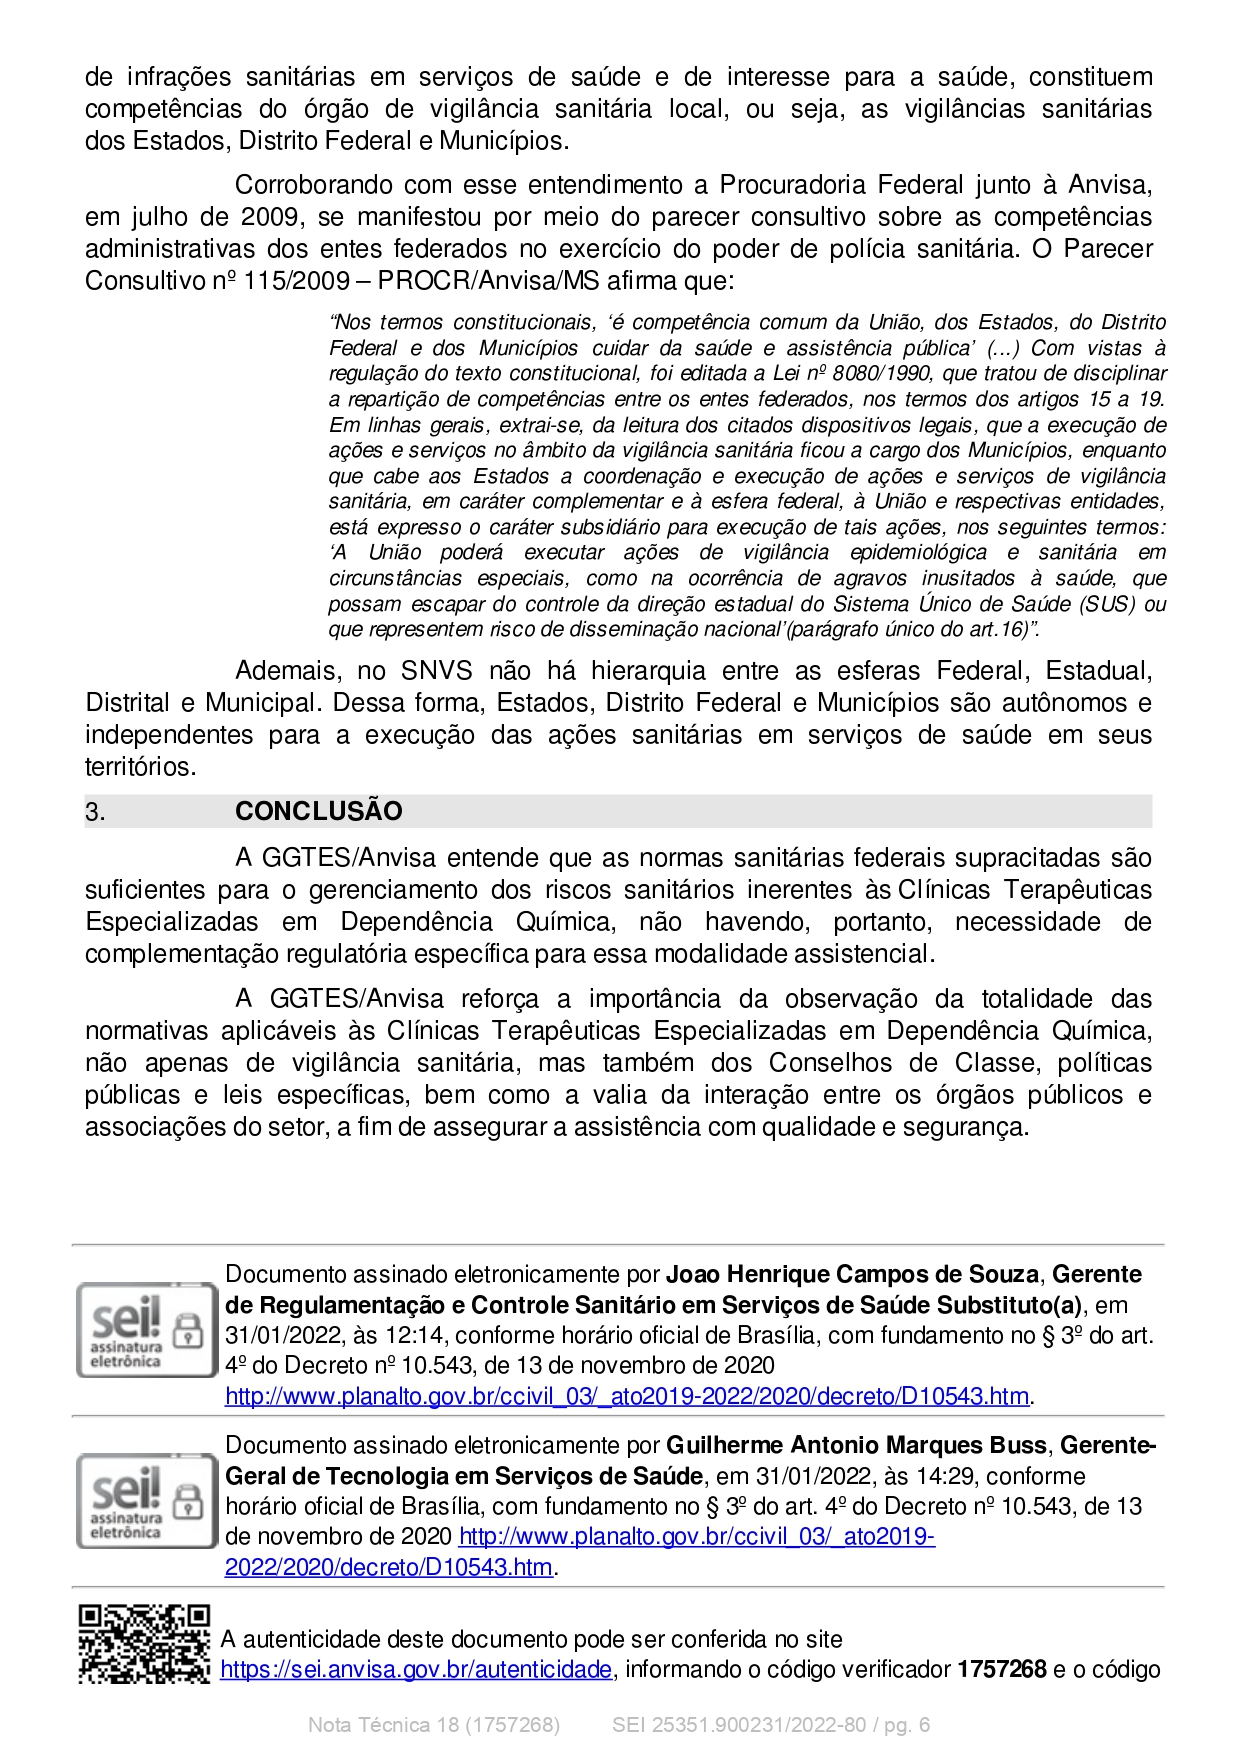 Of. 49-2022 - FEBRACI (Resposta acerca da legislação sanitária federal aplicável às Clínicas Terapêuticas)_page-0006